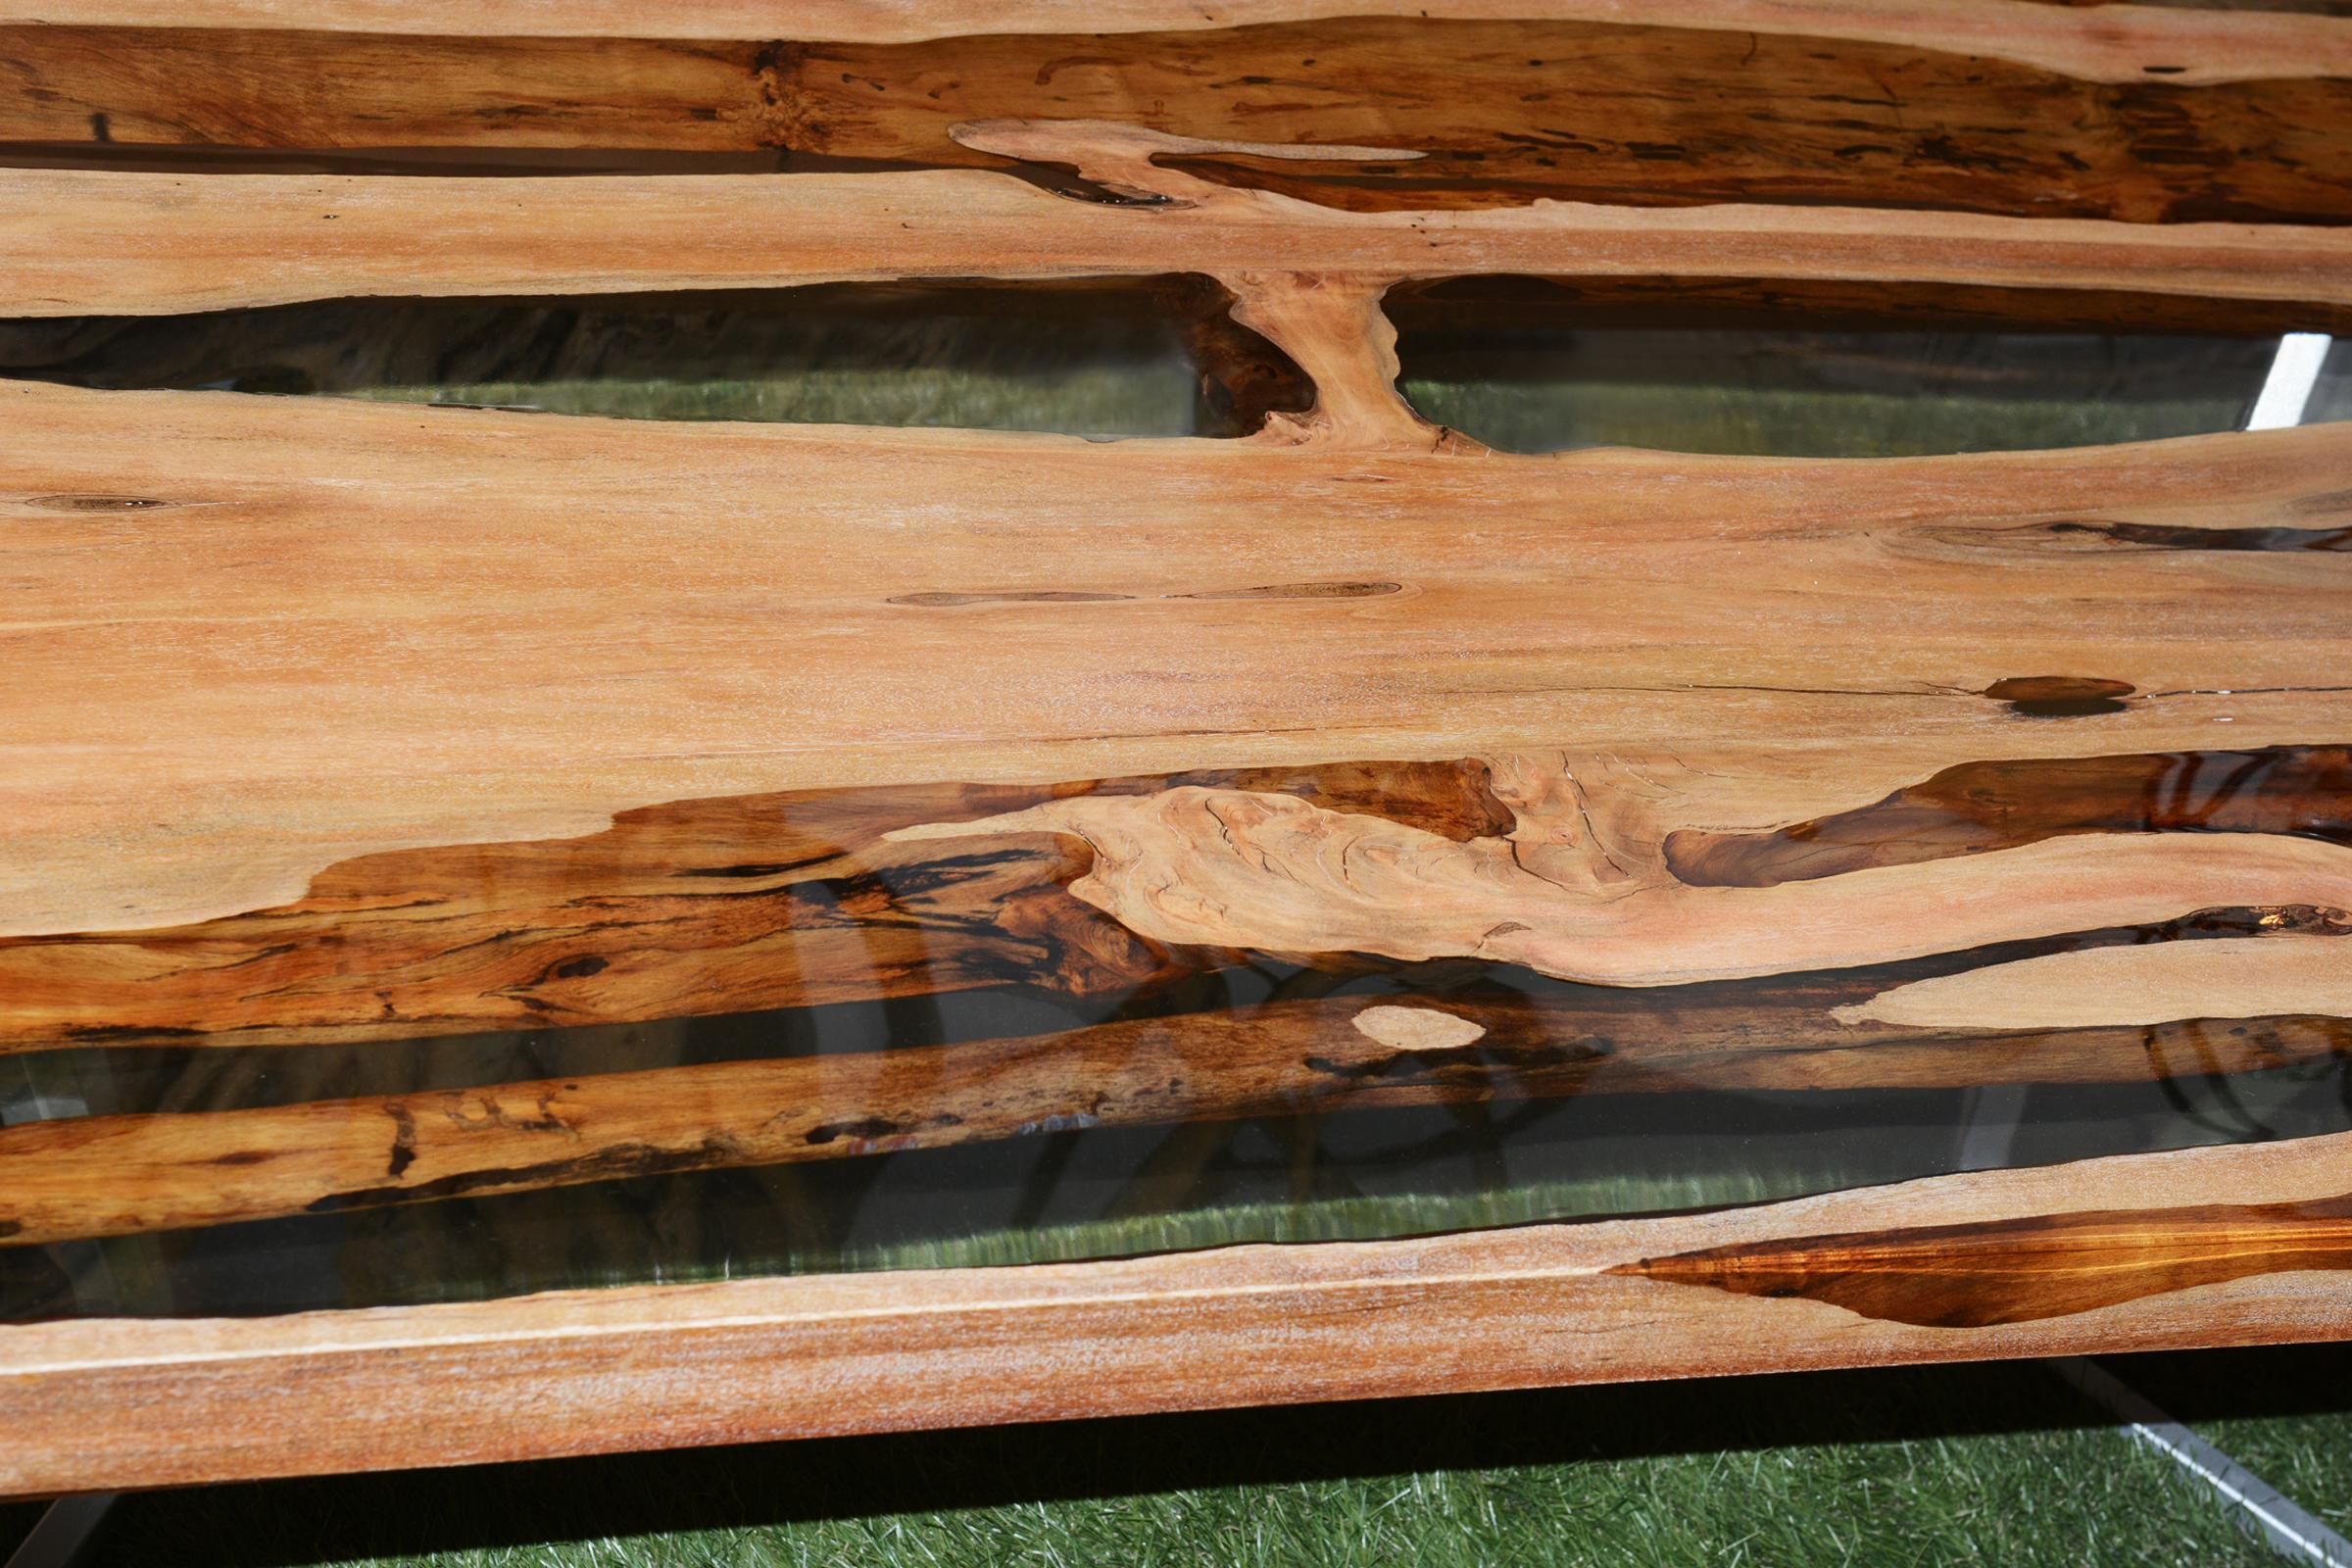 Table basse Aquariquara et résine avec
aquariquara carapanauba bois de brésilien 
mangrove avec de la résine solide de haute qualité. Avec 
base en acier en forme de papillon. Épaisseur de 5 cm sur le dessus.
Pièce exceptionnelle et unique.